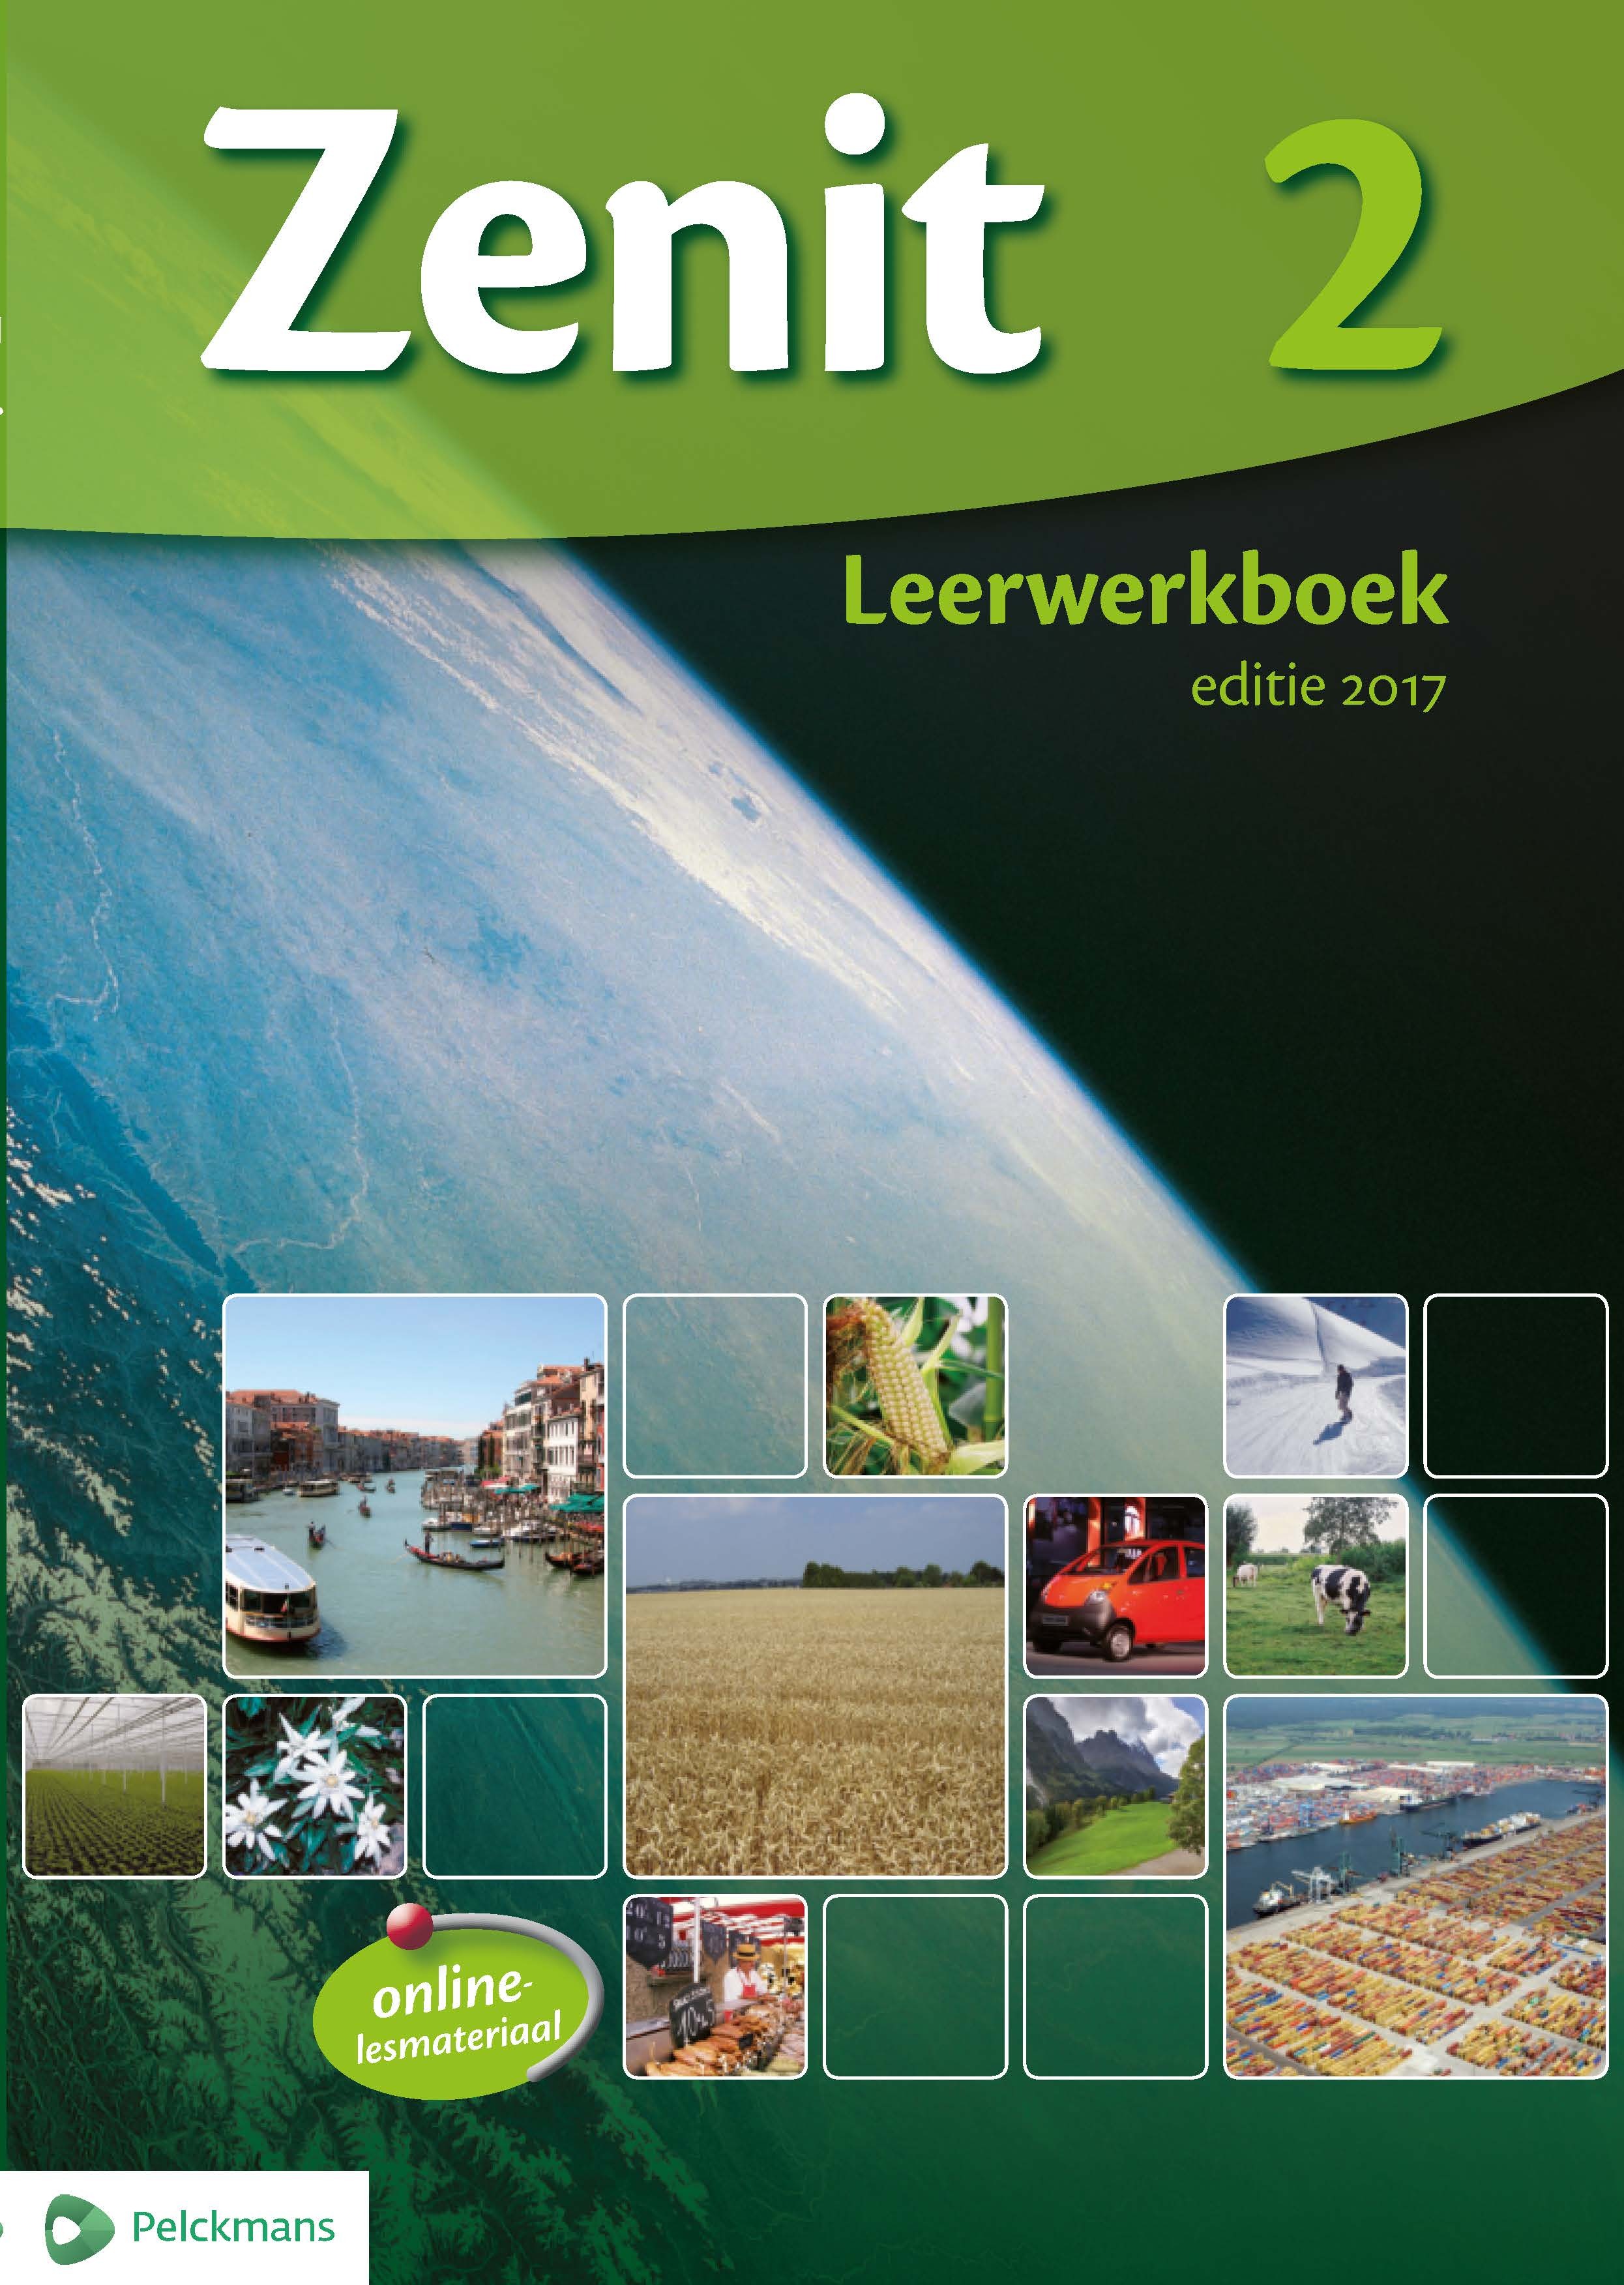 Zenit 2 Leerwerkboek editie 2017